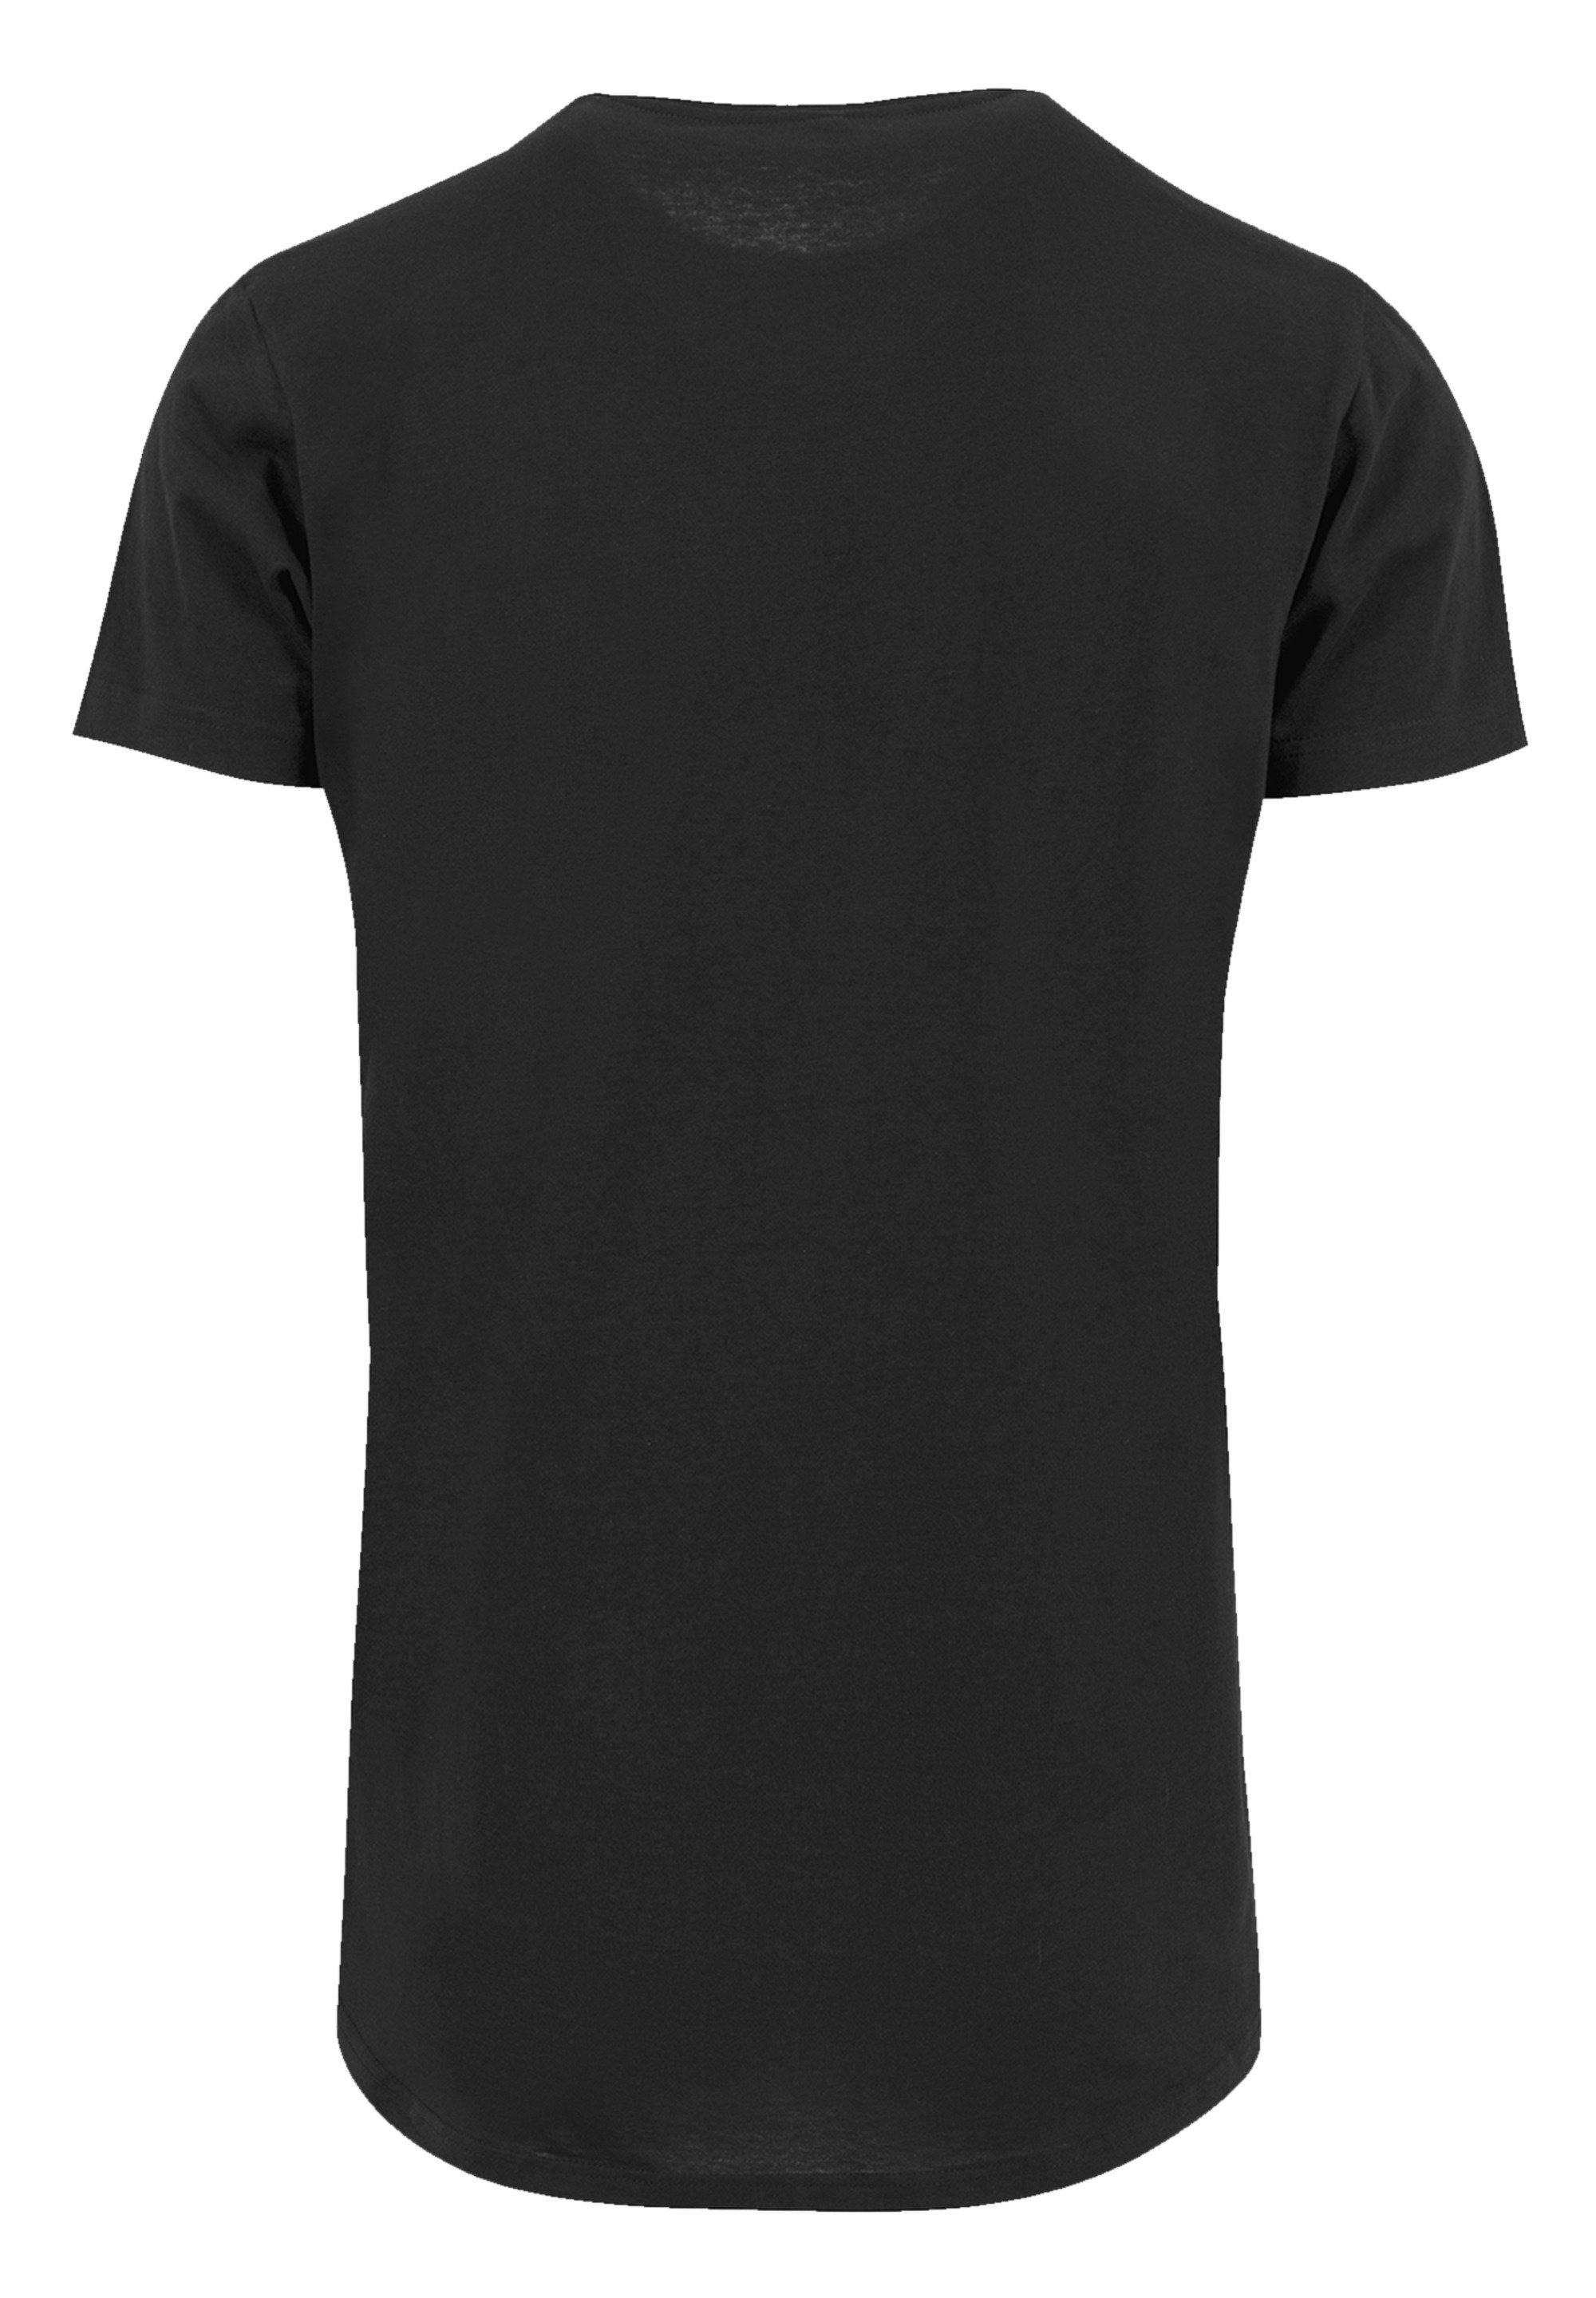 F4NT4STIC T-Shirt Kiss Hard Rock Band Demon Premium Qualität, Sehr weicher  Baumwollstoff mit hohem Tragekomfort